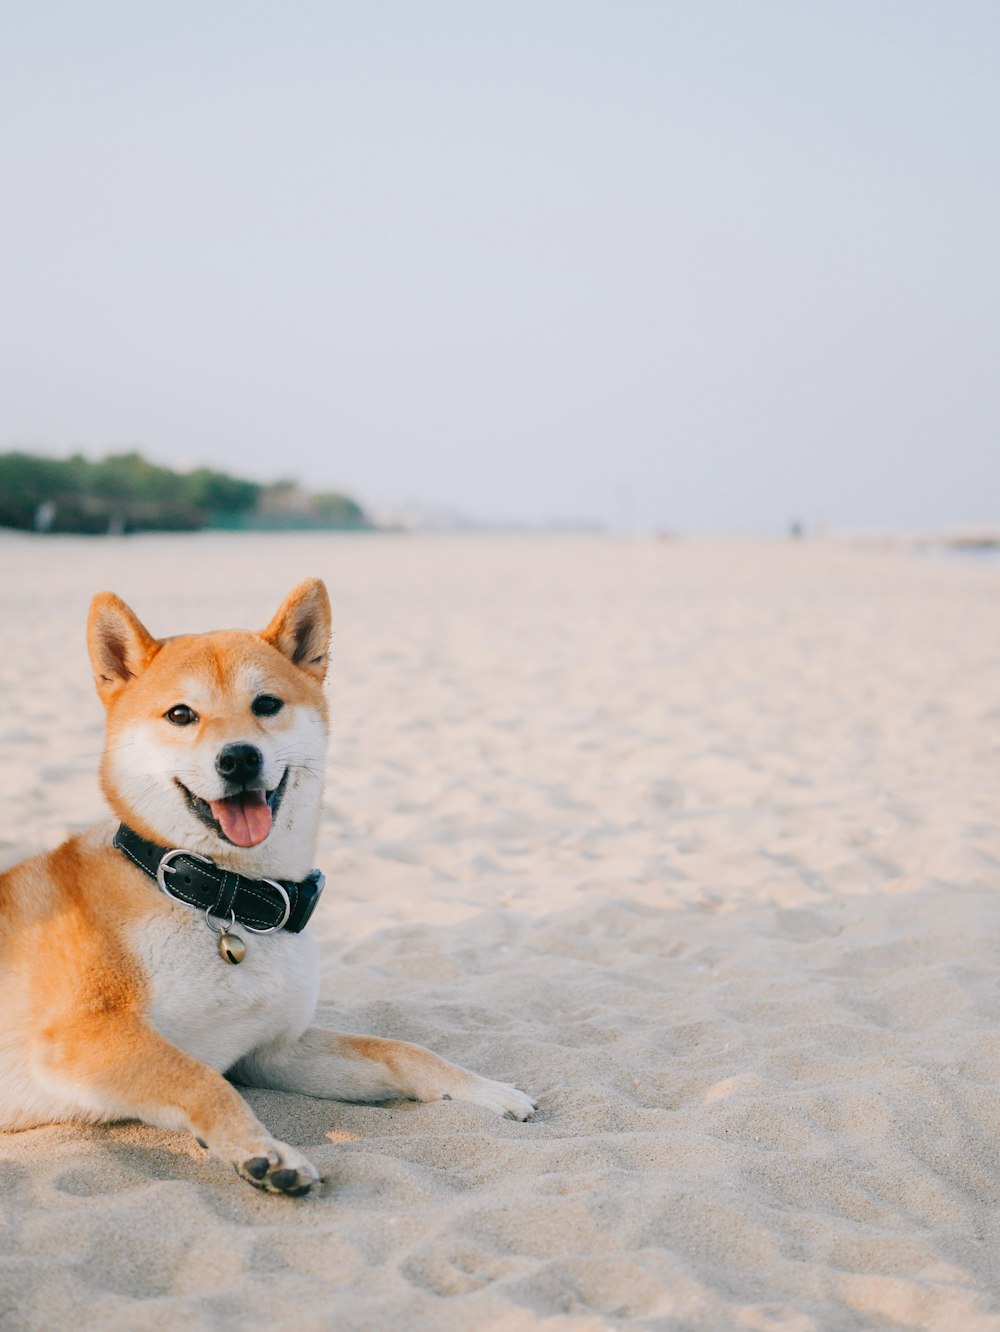 cane a pelo corto marrone e bianco su sabbia bianca durante il giorno